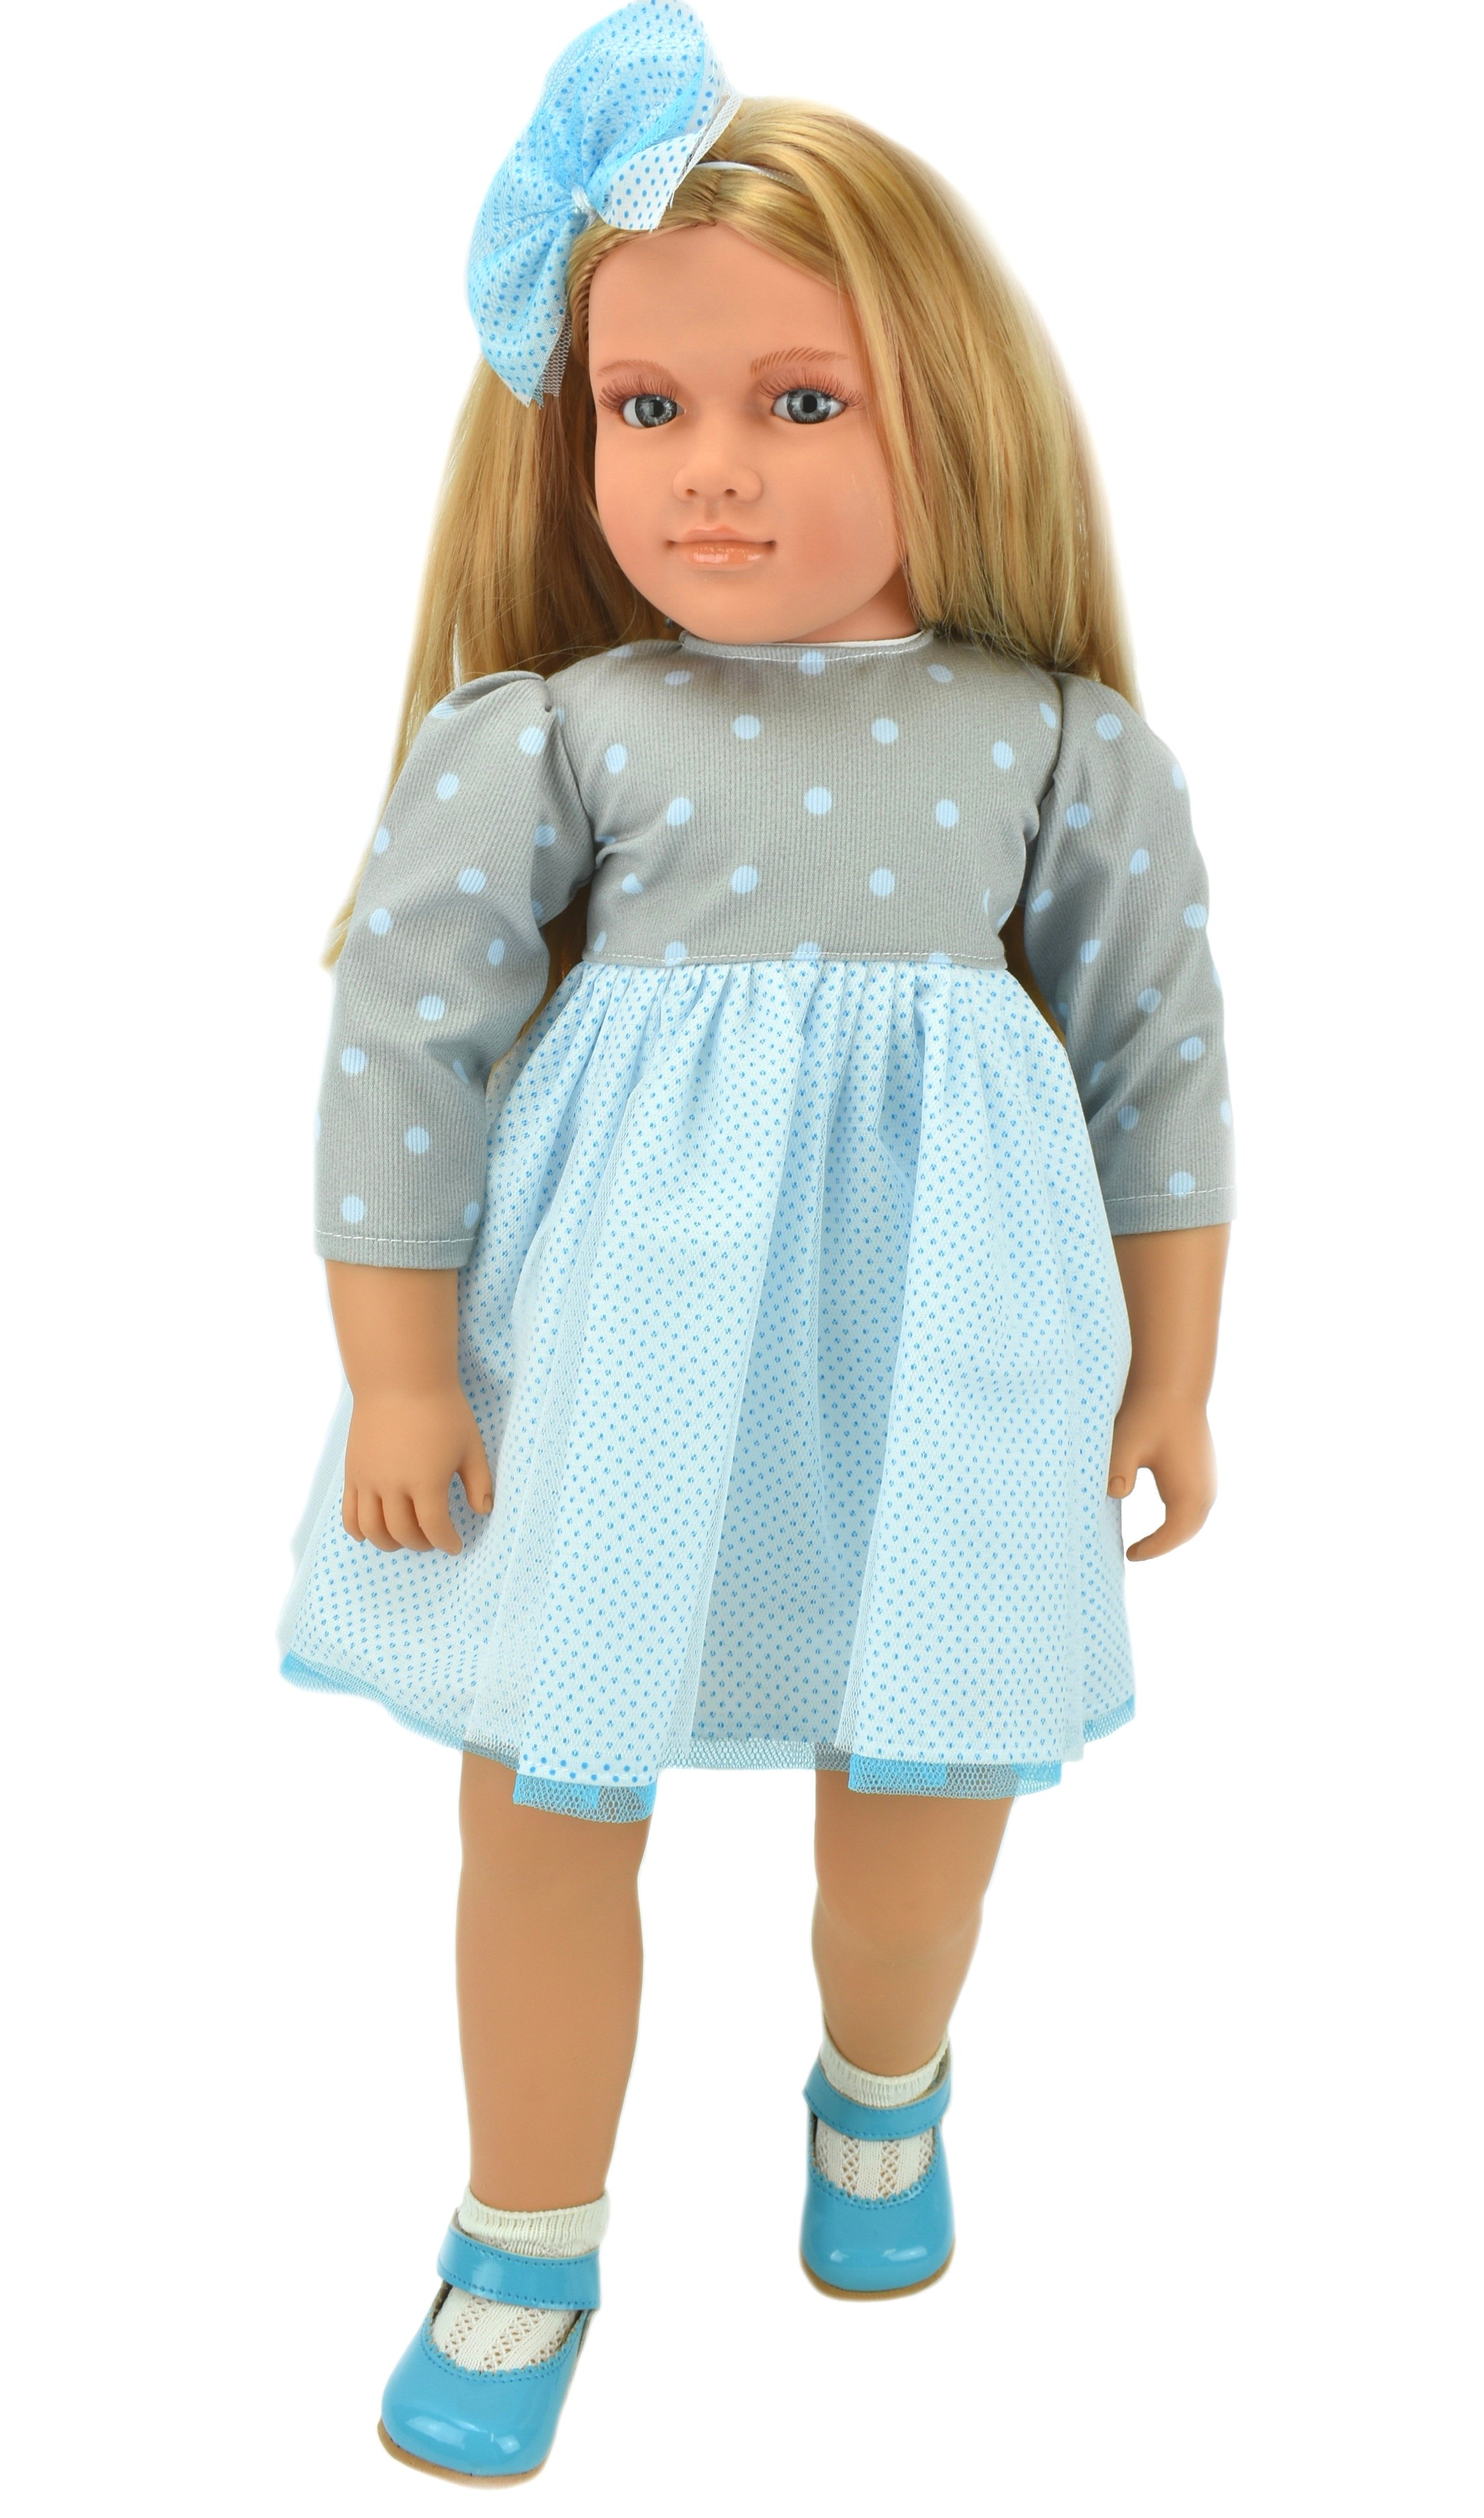 Коллекционная кукла Lamagik Ширли блондинка, в серо-белом платье в горох, 62 см, B9004 lamagik s l кукла бетти темнокожая в платье в клетку с красным бантом 30 см